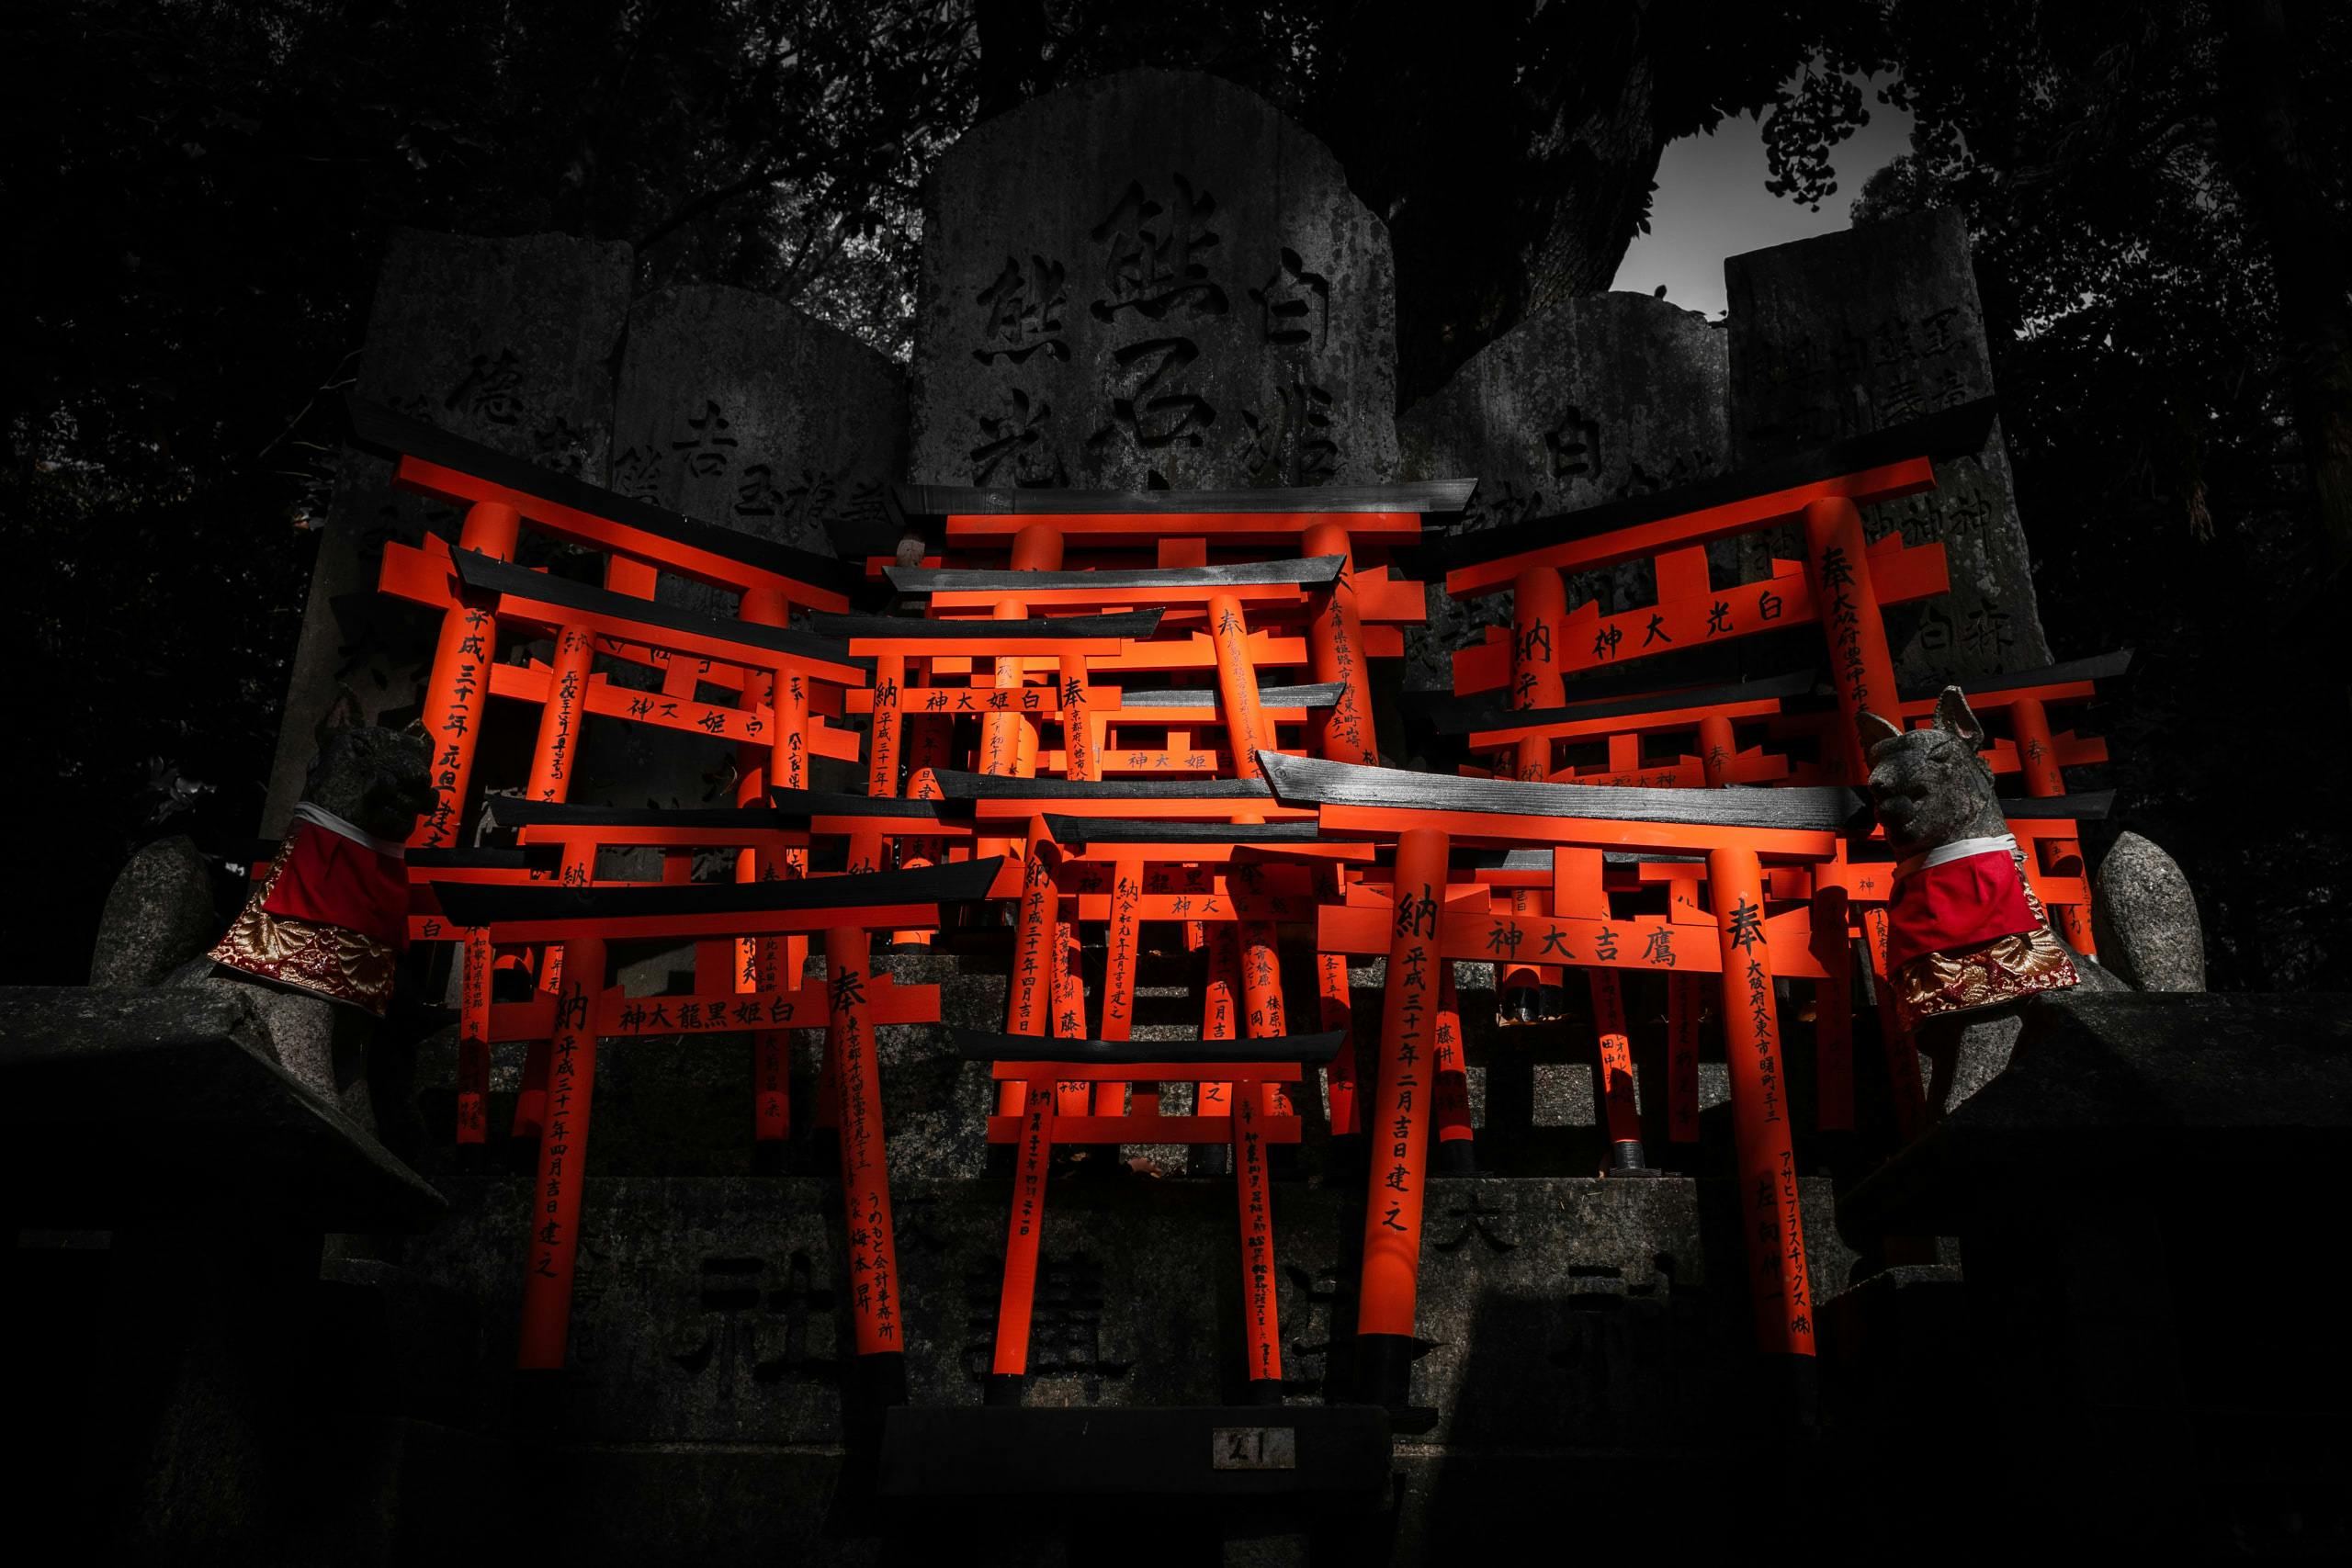 A cluster of torii gates on pedestal